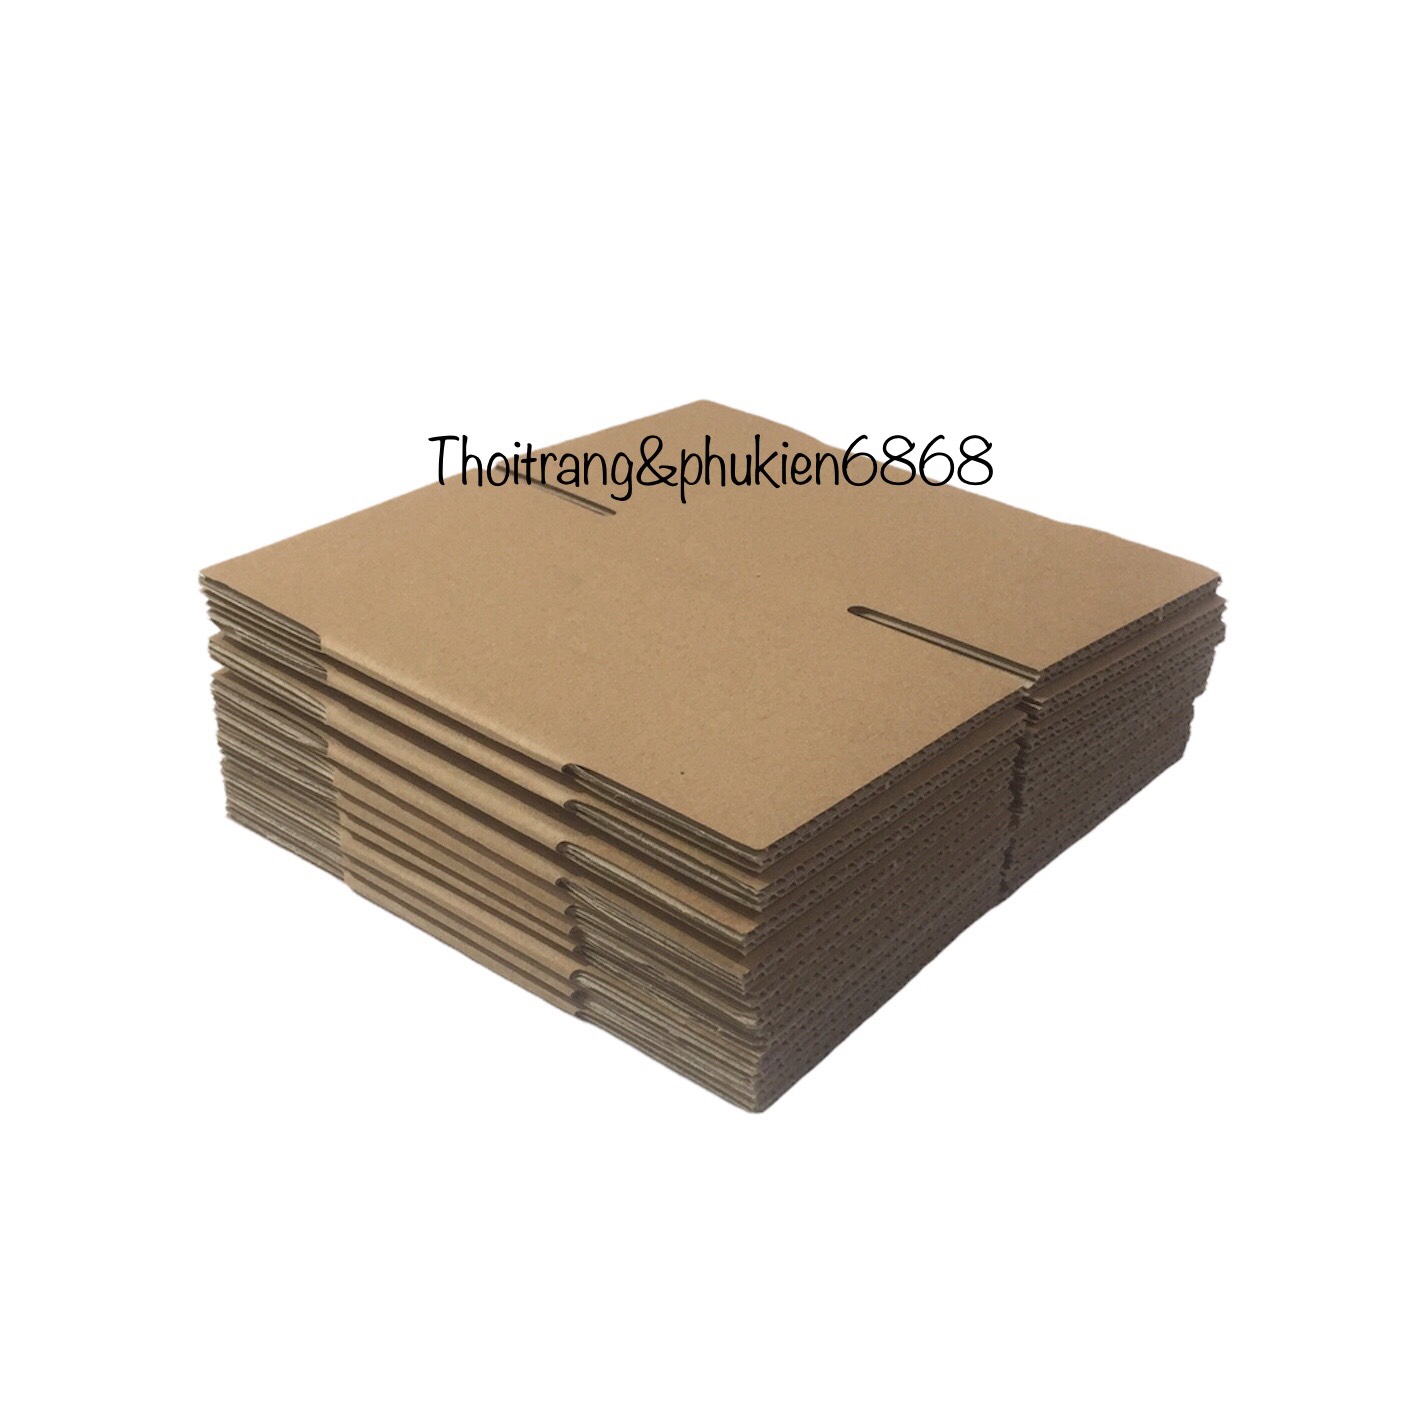 10x10x8 Combo (từ 10 đến 100) hộp carton đóng hàng cỡ nhỏ size 10*10*8